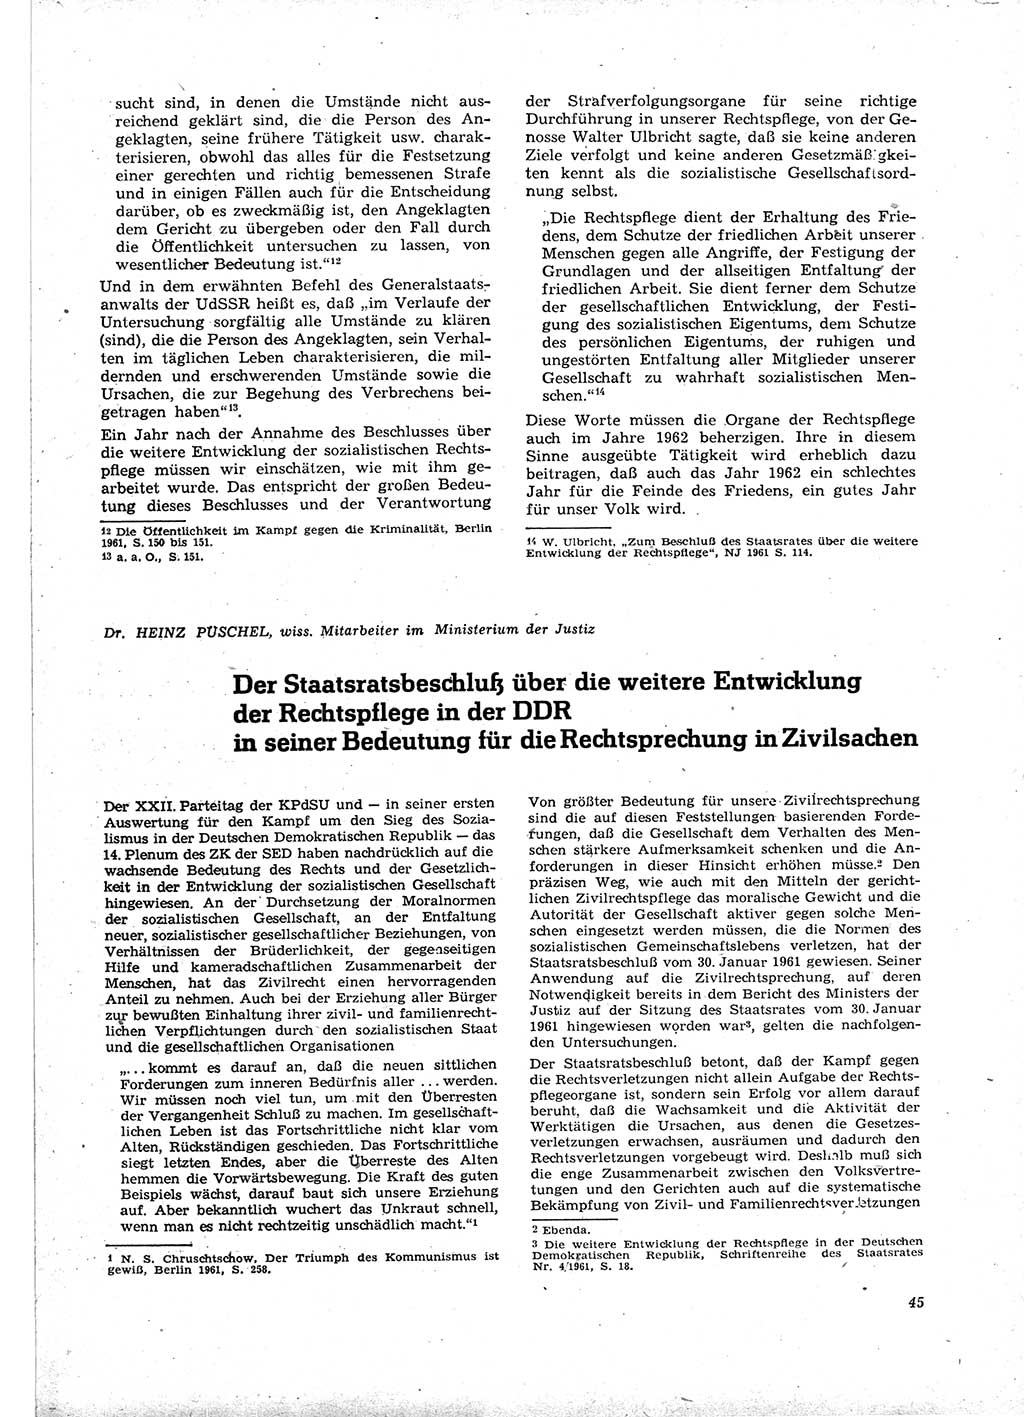 Neue Justiz (NJ), Zeitschrift für Recht und Rechtswissenschaft [Deutsche Demokratische Republik (DDR)], 16. Jahrgang 1962, Seite 45 (NJ DDR 1962, S. 45)